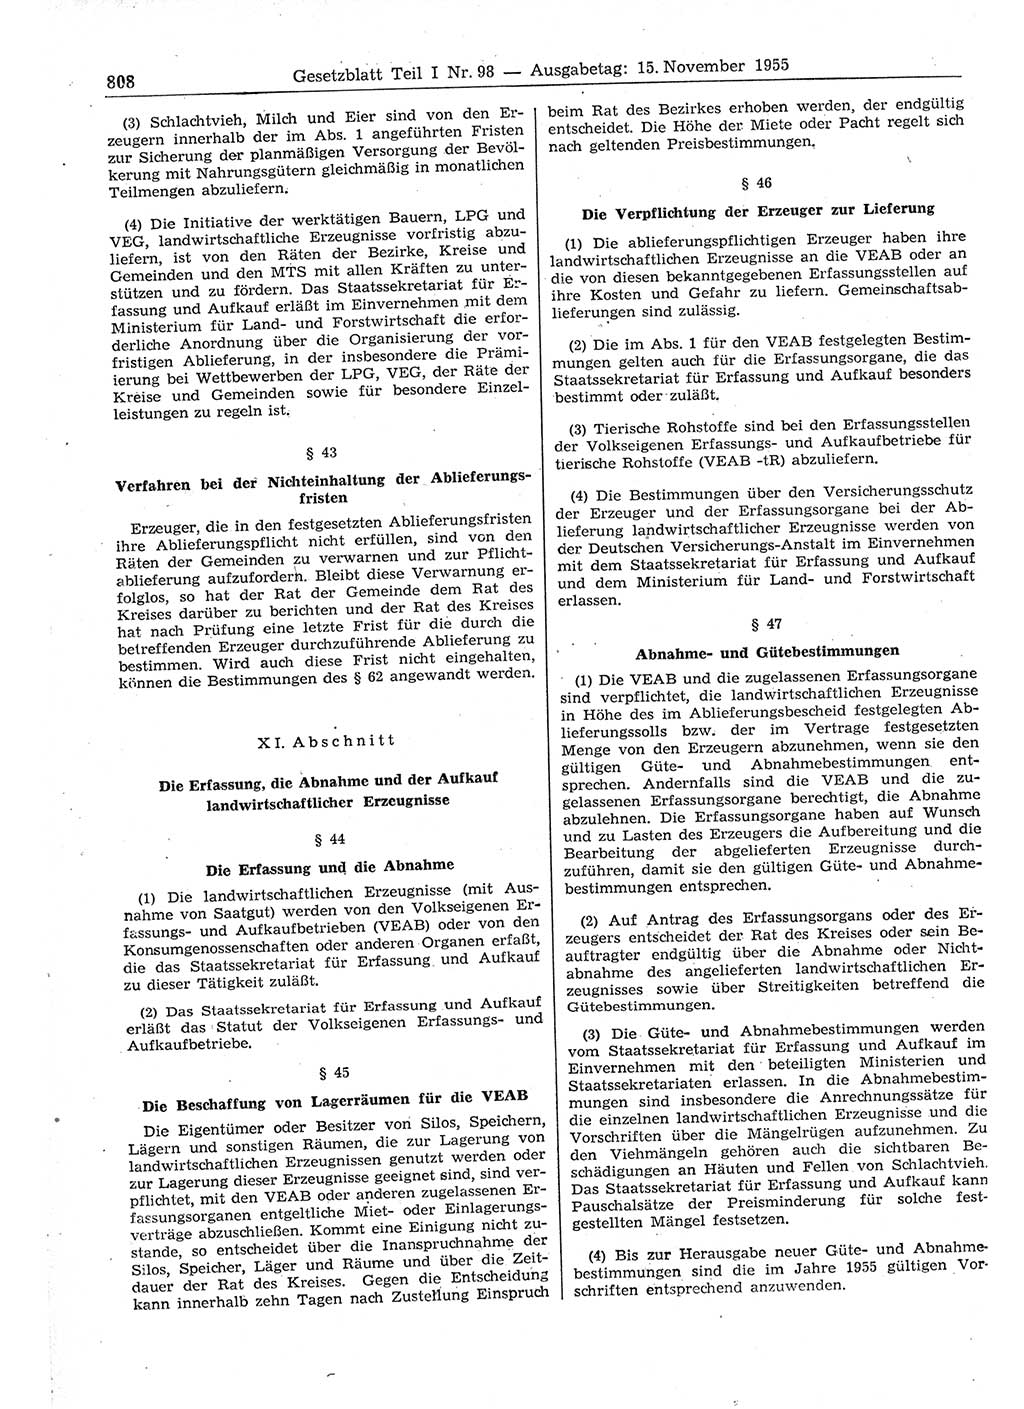 Gesetzblatt (GBl.) der Deutschen Demokratischen Republik (DDR) Teil Ⅰ 1955, Seite 808 (GBl. DDR Ⅰ 1955, S. 808)